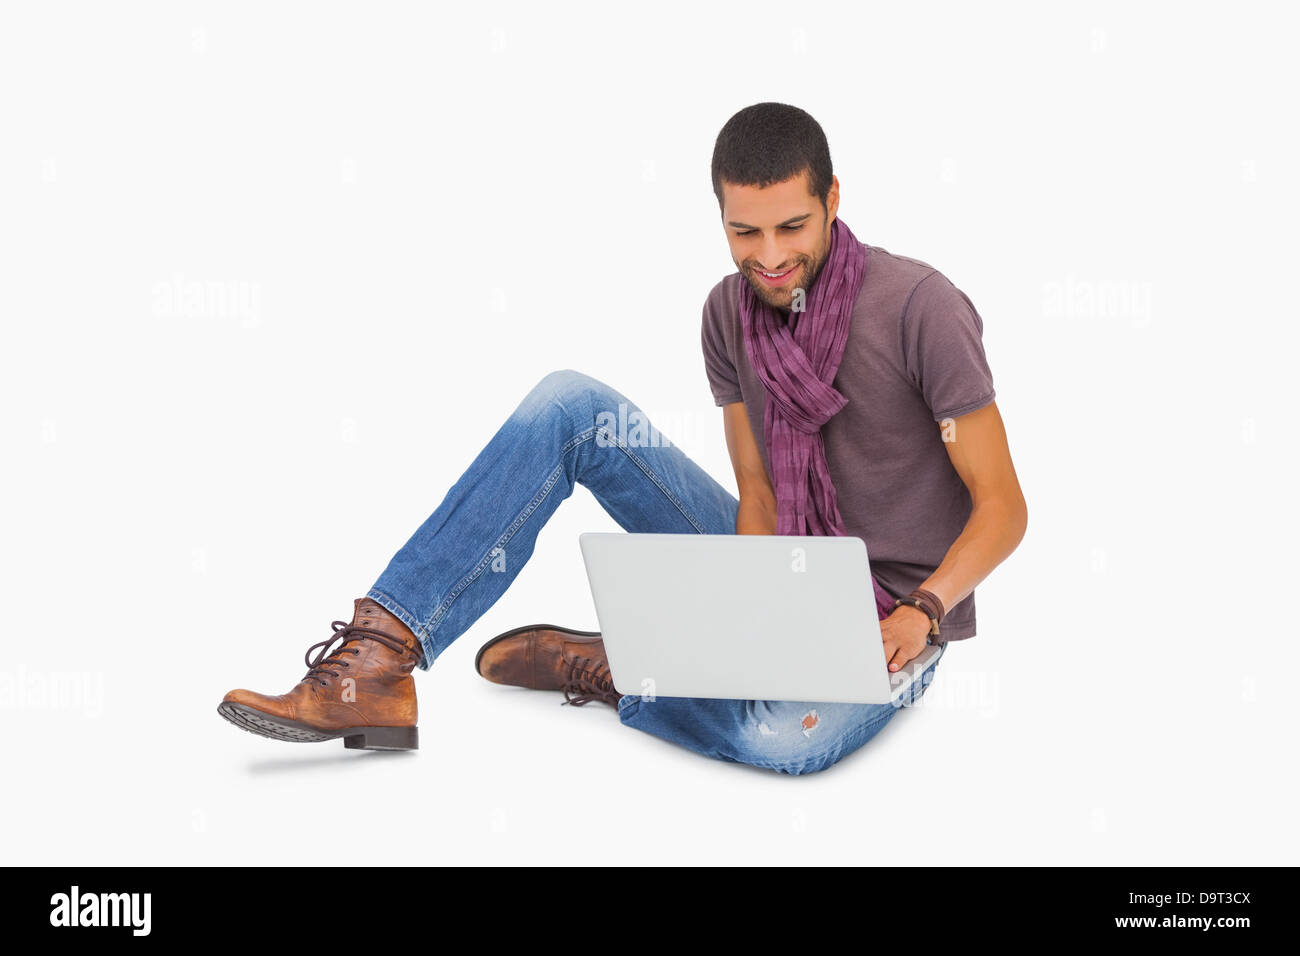 Smiling man wearing scarf sitting on floor using laptop Stock Photo